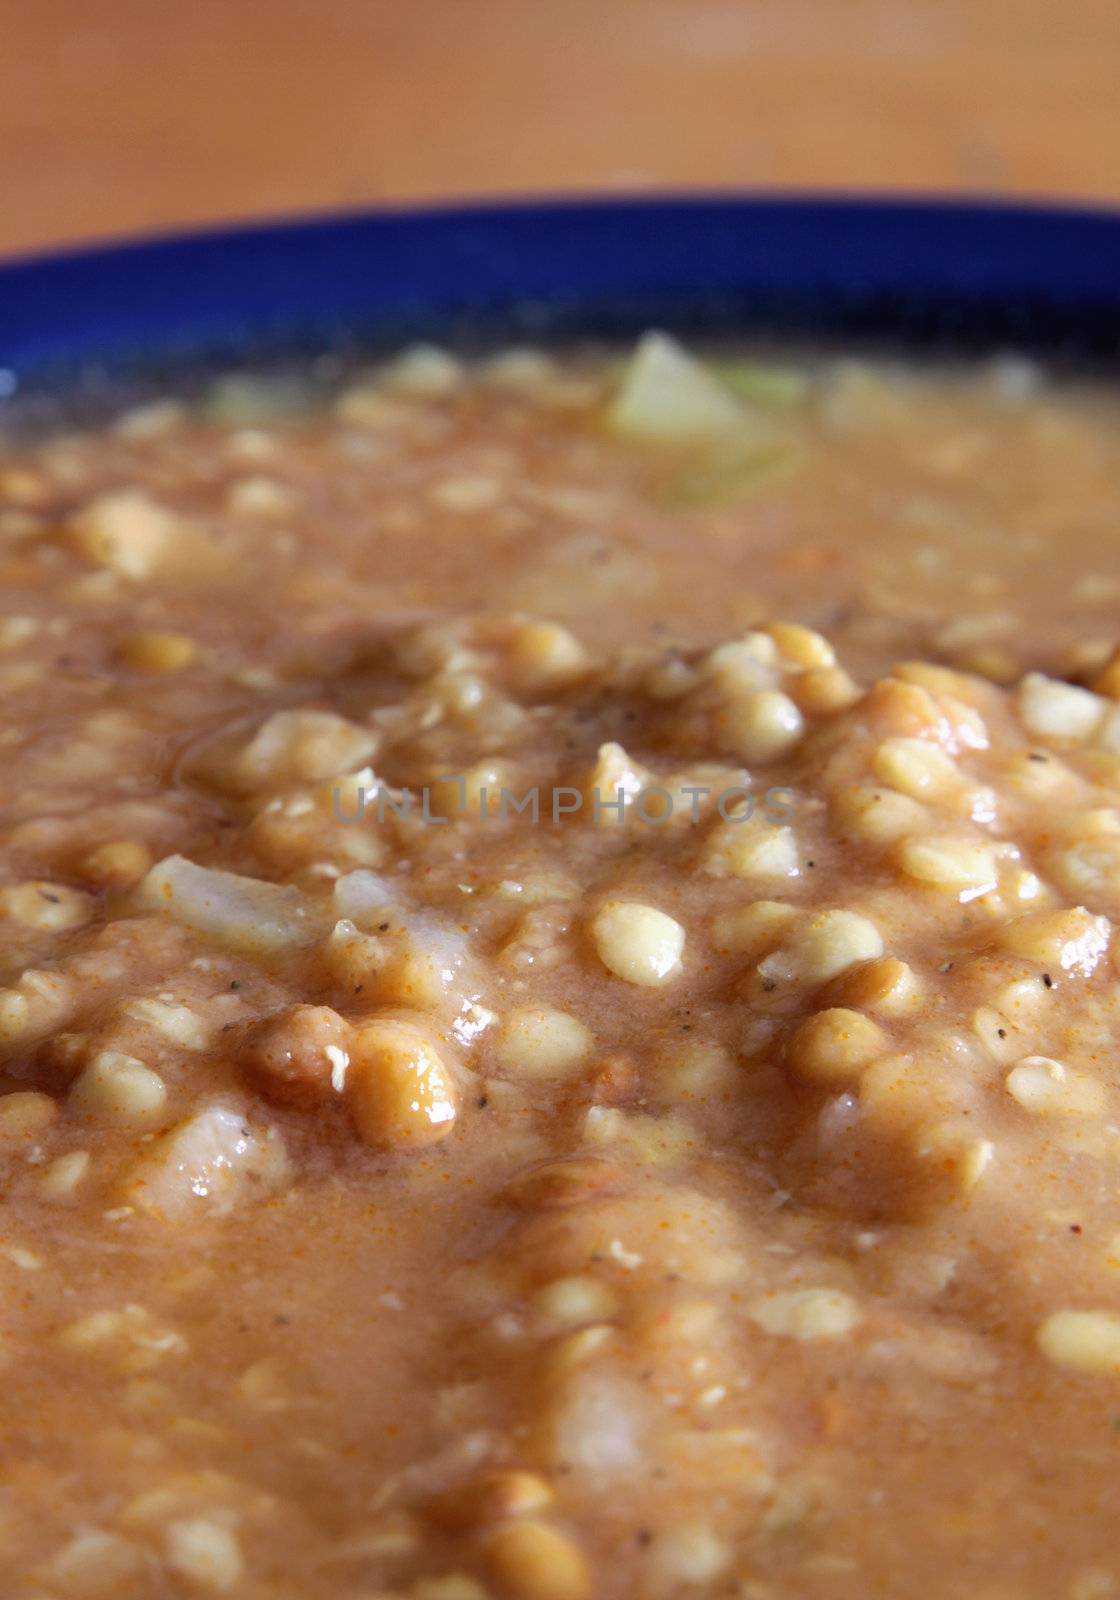 A bowl of lentil soup.
